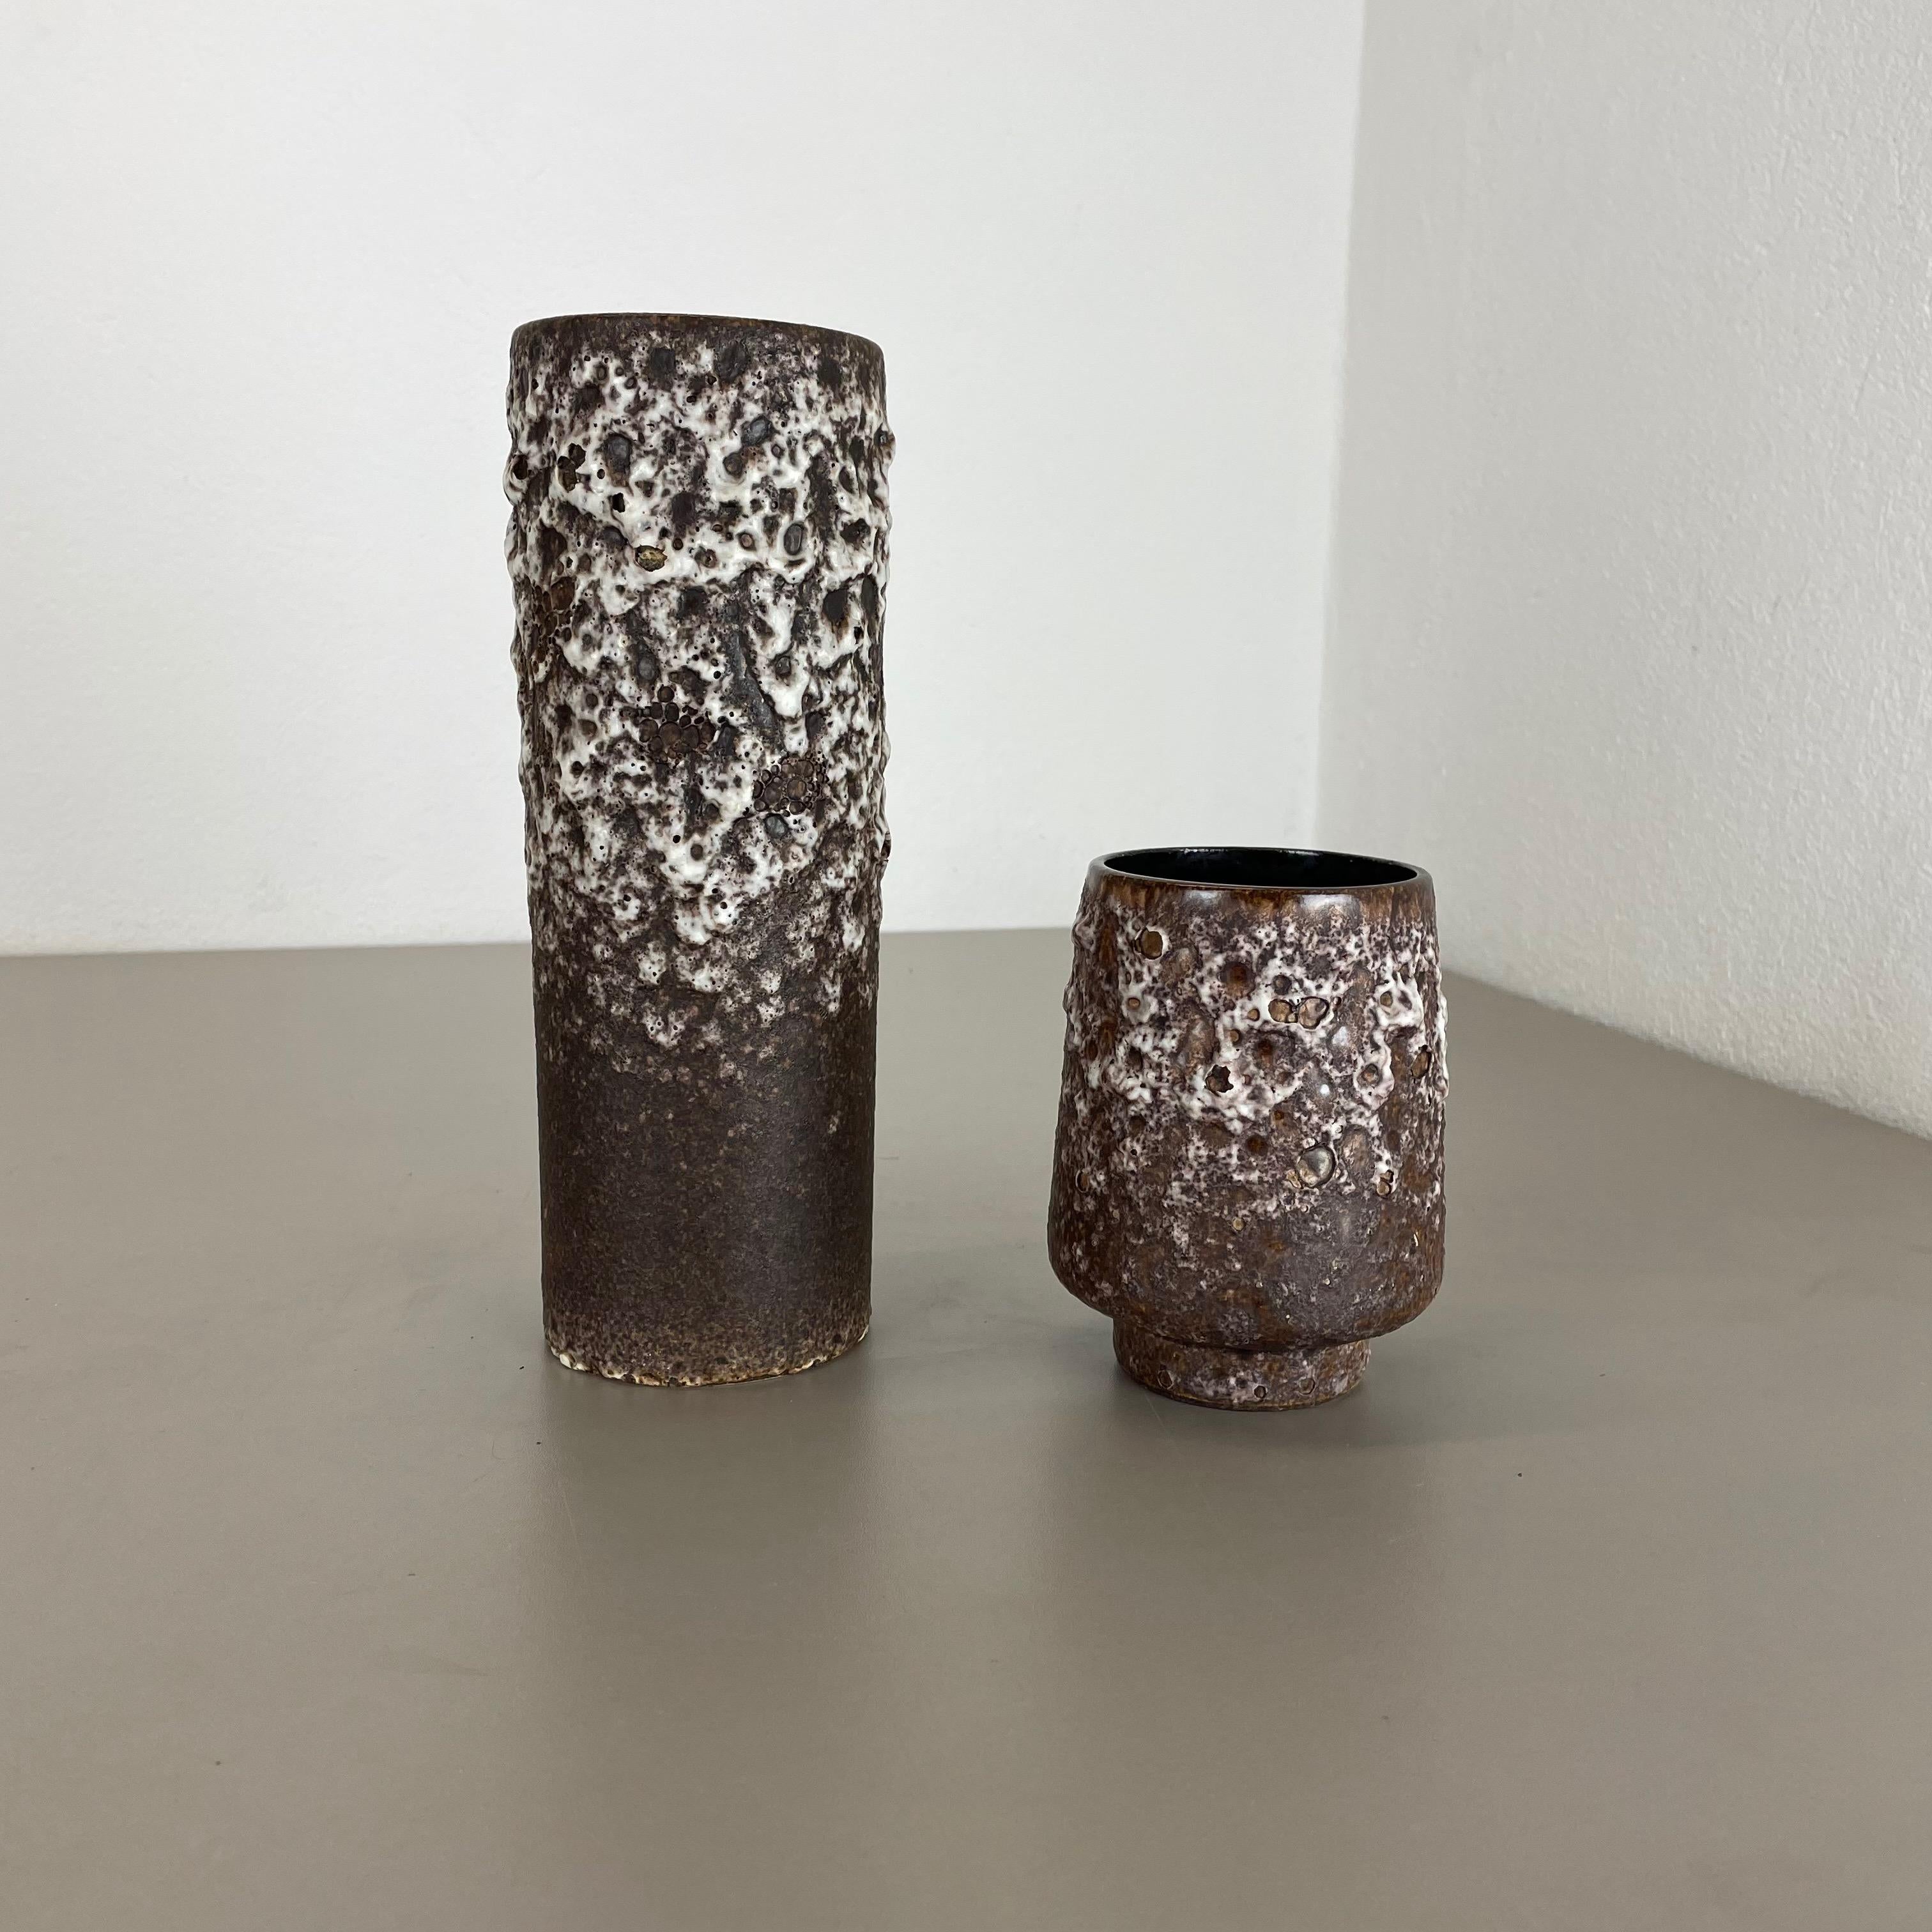 Artikel:

Set aus zwei fetten Lavakunstvasen




Produzent:

Jopeko-Keramik, Deutschland



Jahrzehnt:

1970s




Diese originalen Vintage-Vasen wurden in den 1970er Jahren in Deutschland hergestellt. Sie ist aus Keramik in